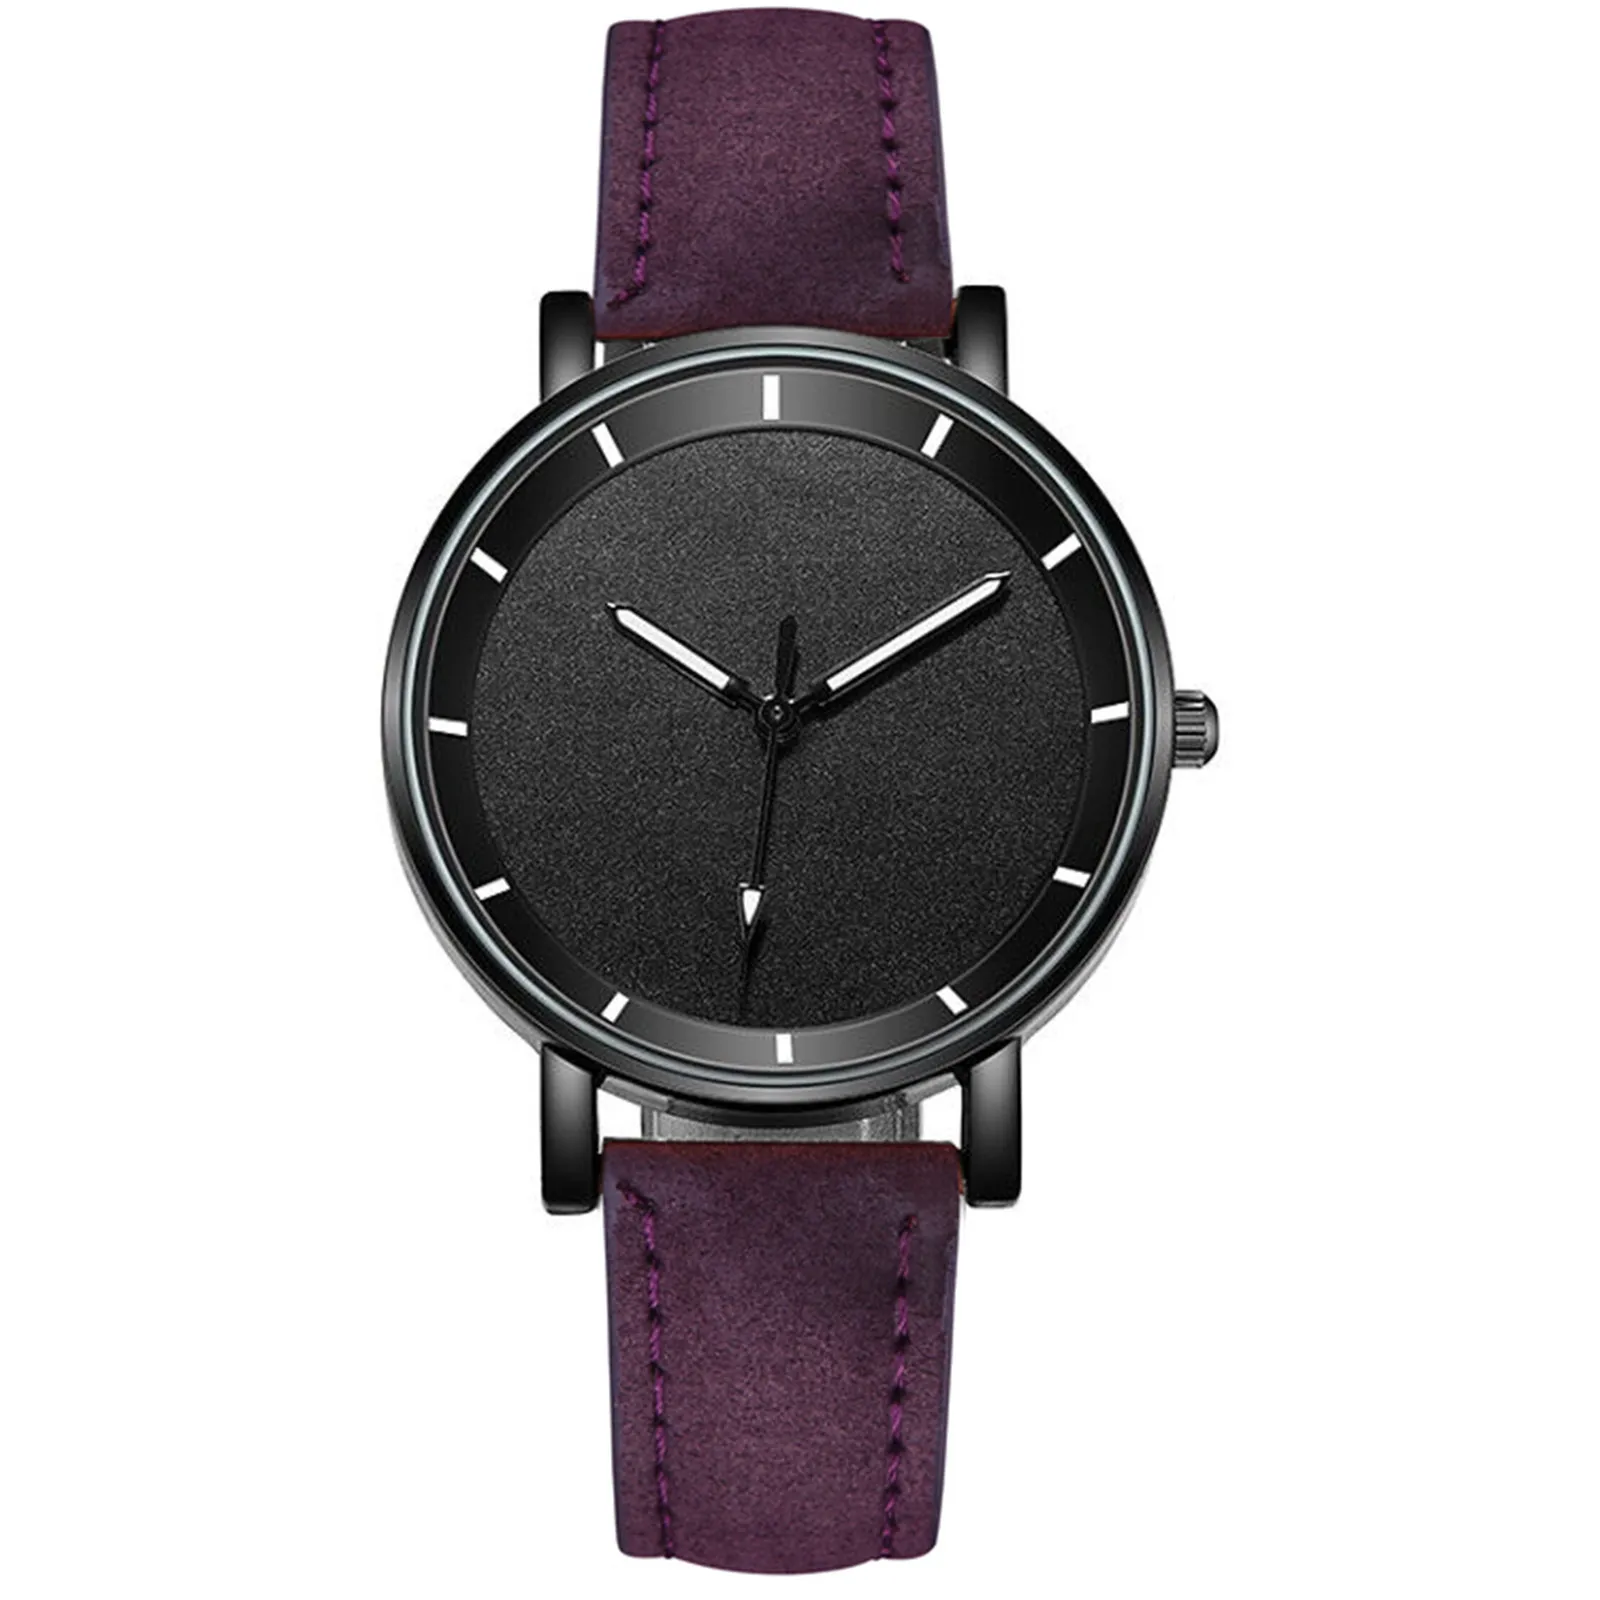 

Luxury Watches Montre Femme Quartz Watch Stainless Steel Dial Casual Bracele Wristwatch Zegarek Damski Reloj Mujer